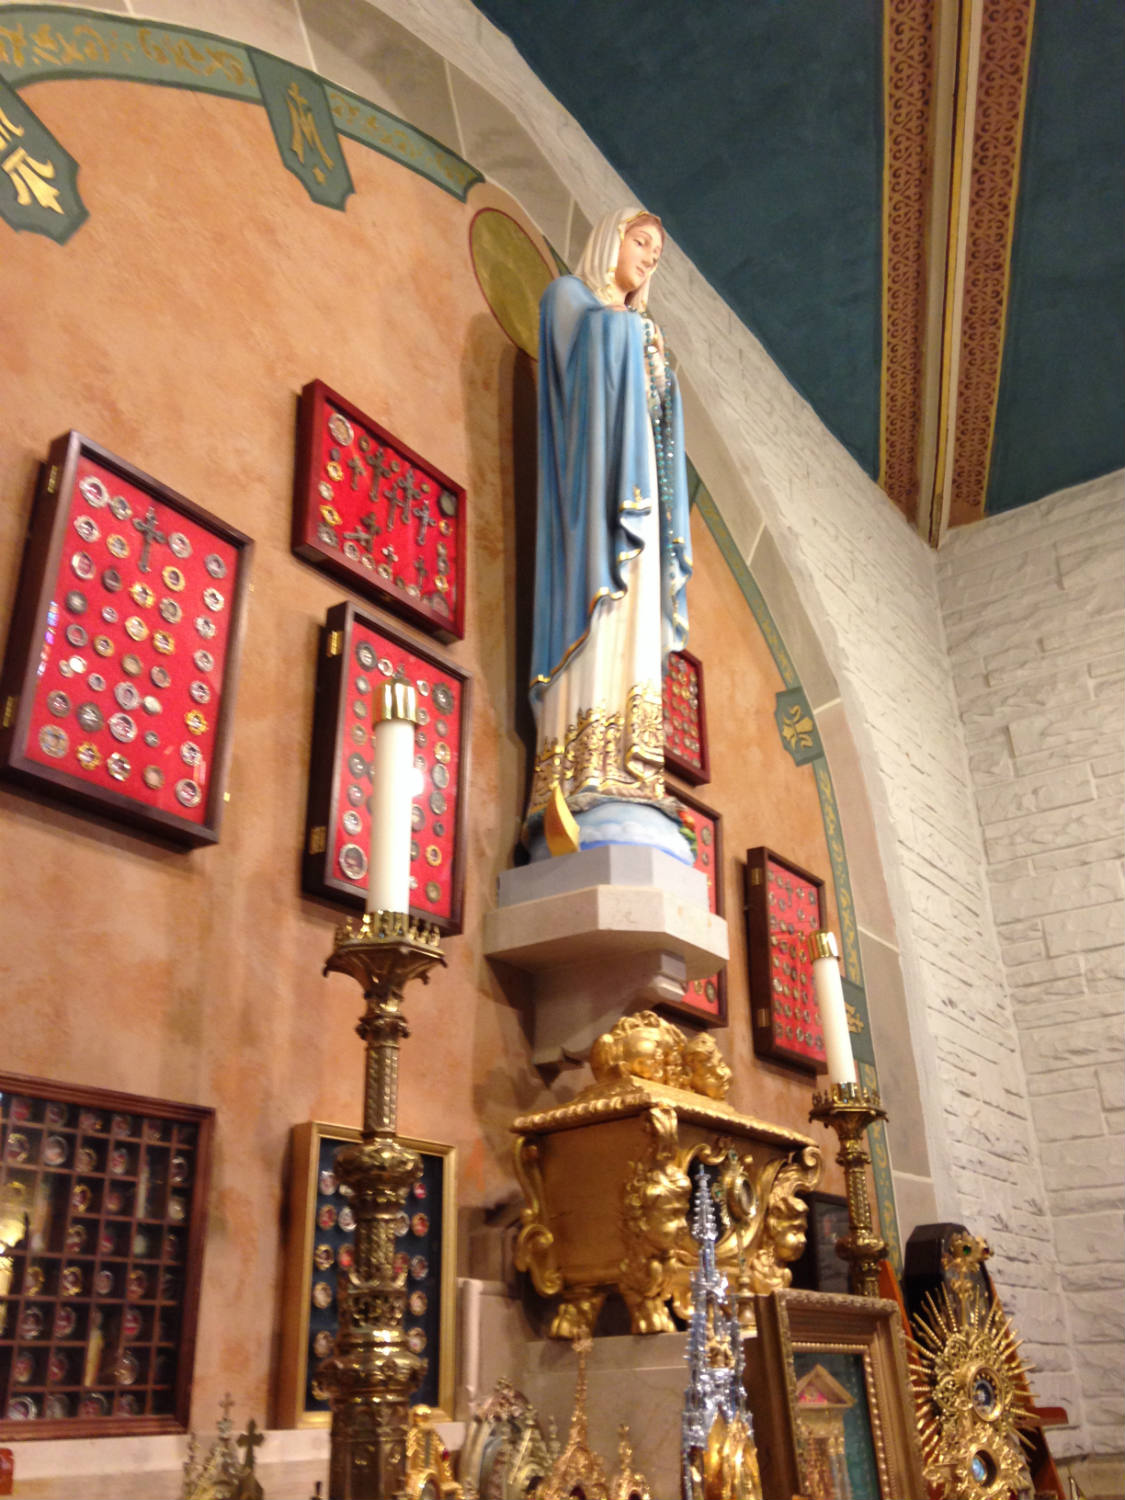 Relic Collection at St. John Gualbert's Church in Cheektowaga, NY